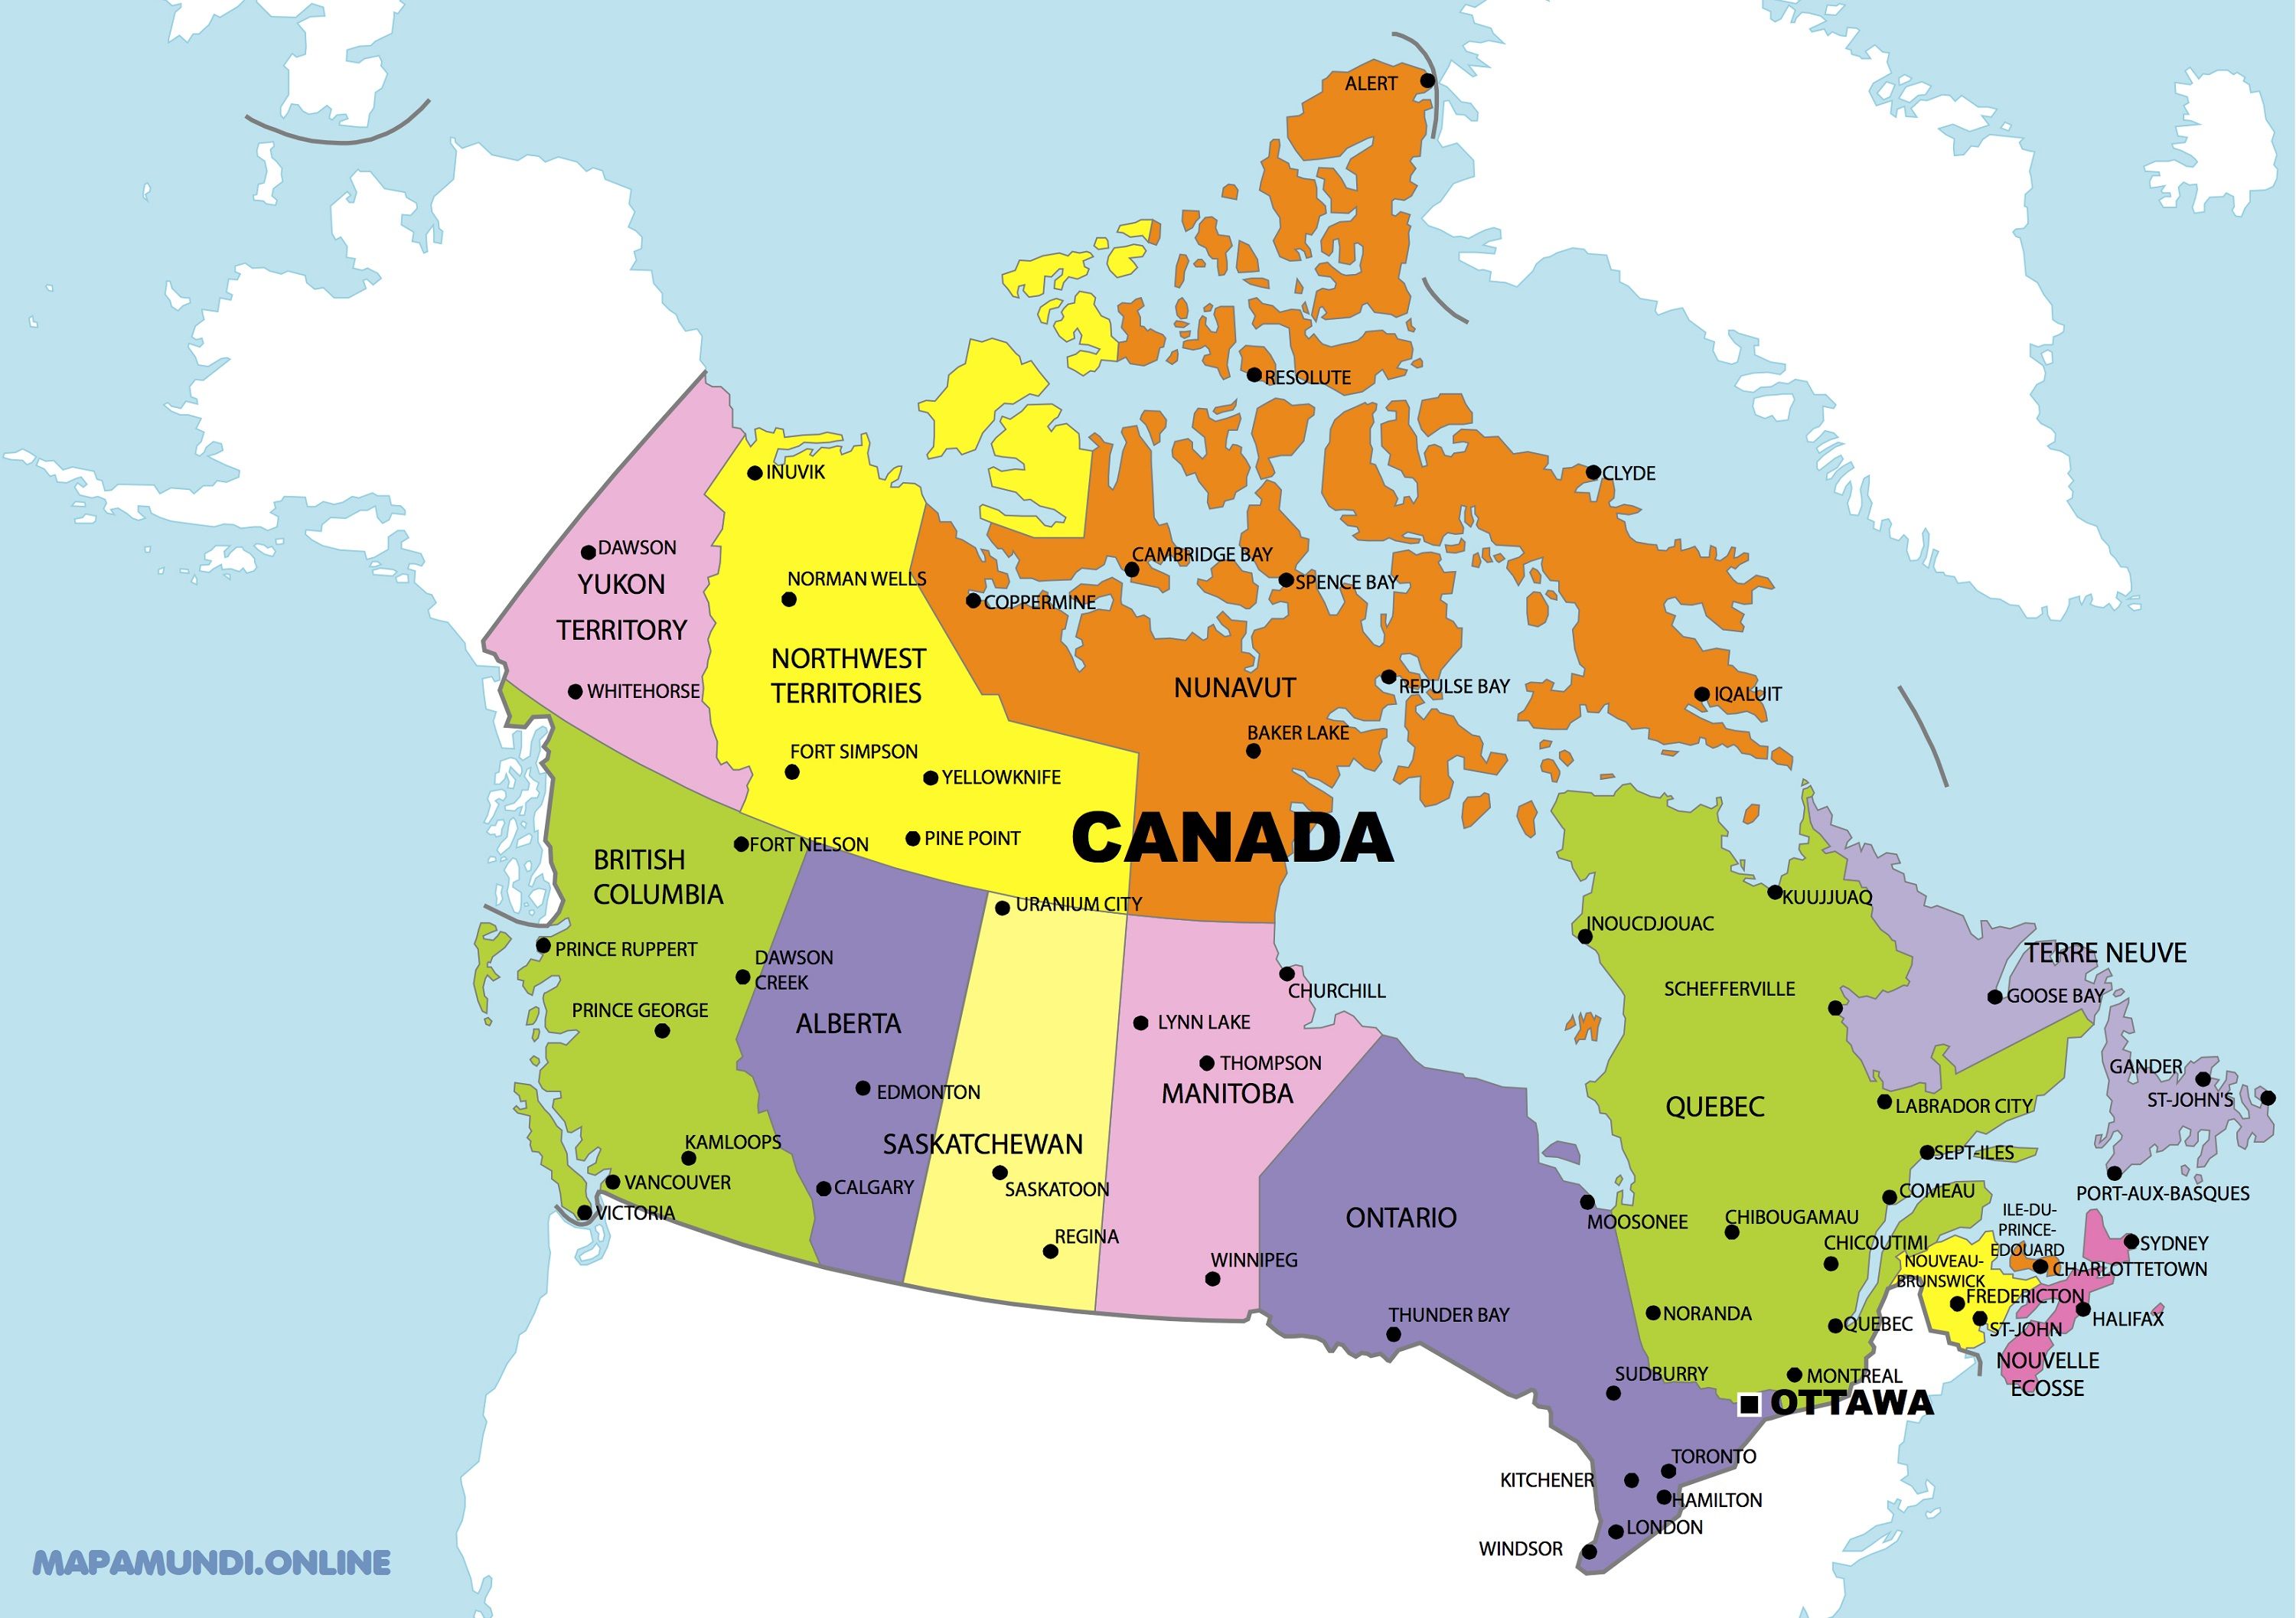 Triste Famélico Irradiar Mapa Politico De Estados Unidos Y Canada Espera Un Minuto Moco Alcohol 0085